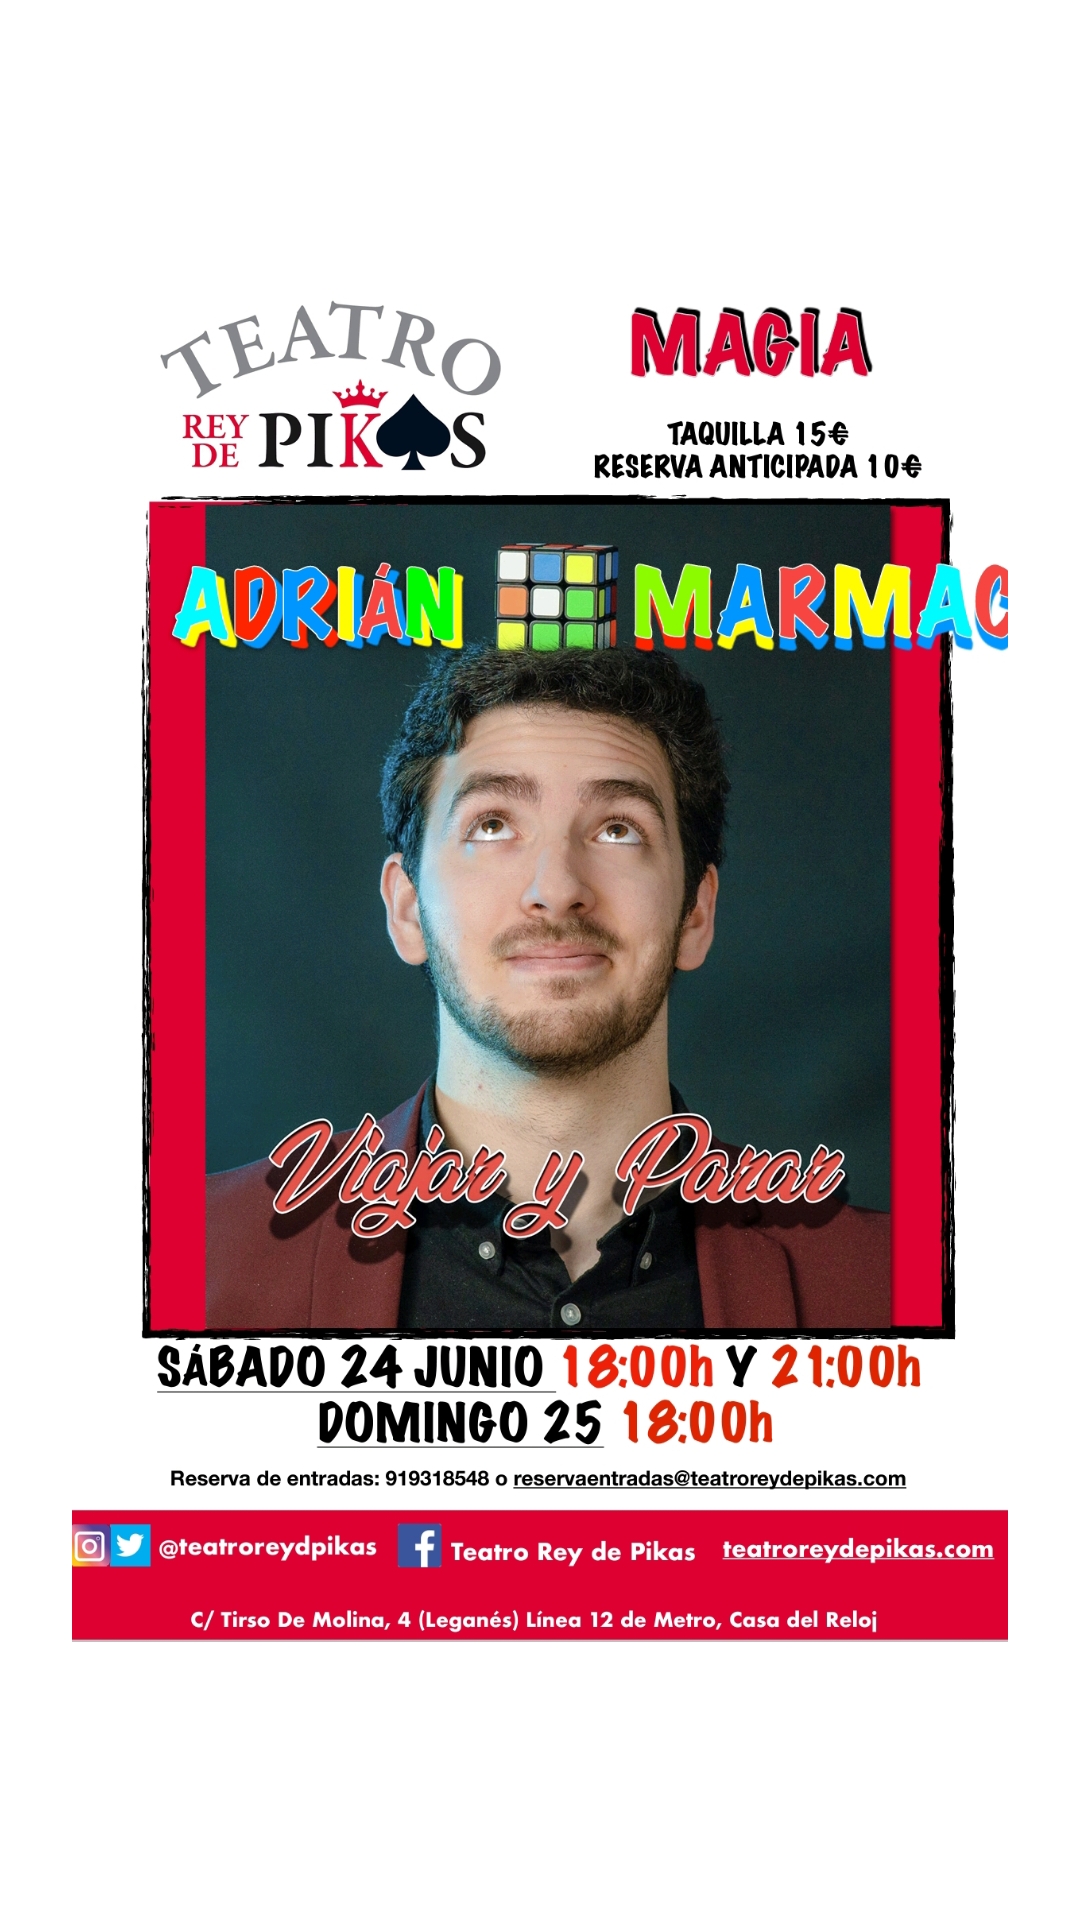 El espectáculo de Adrián Marmac “Viajar y Parar”